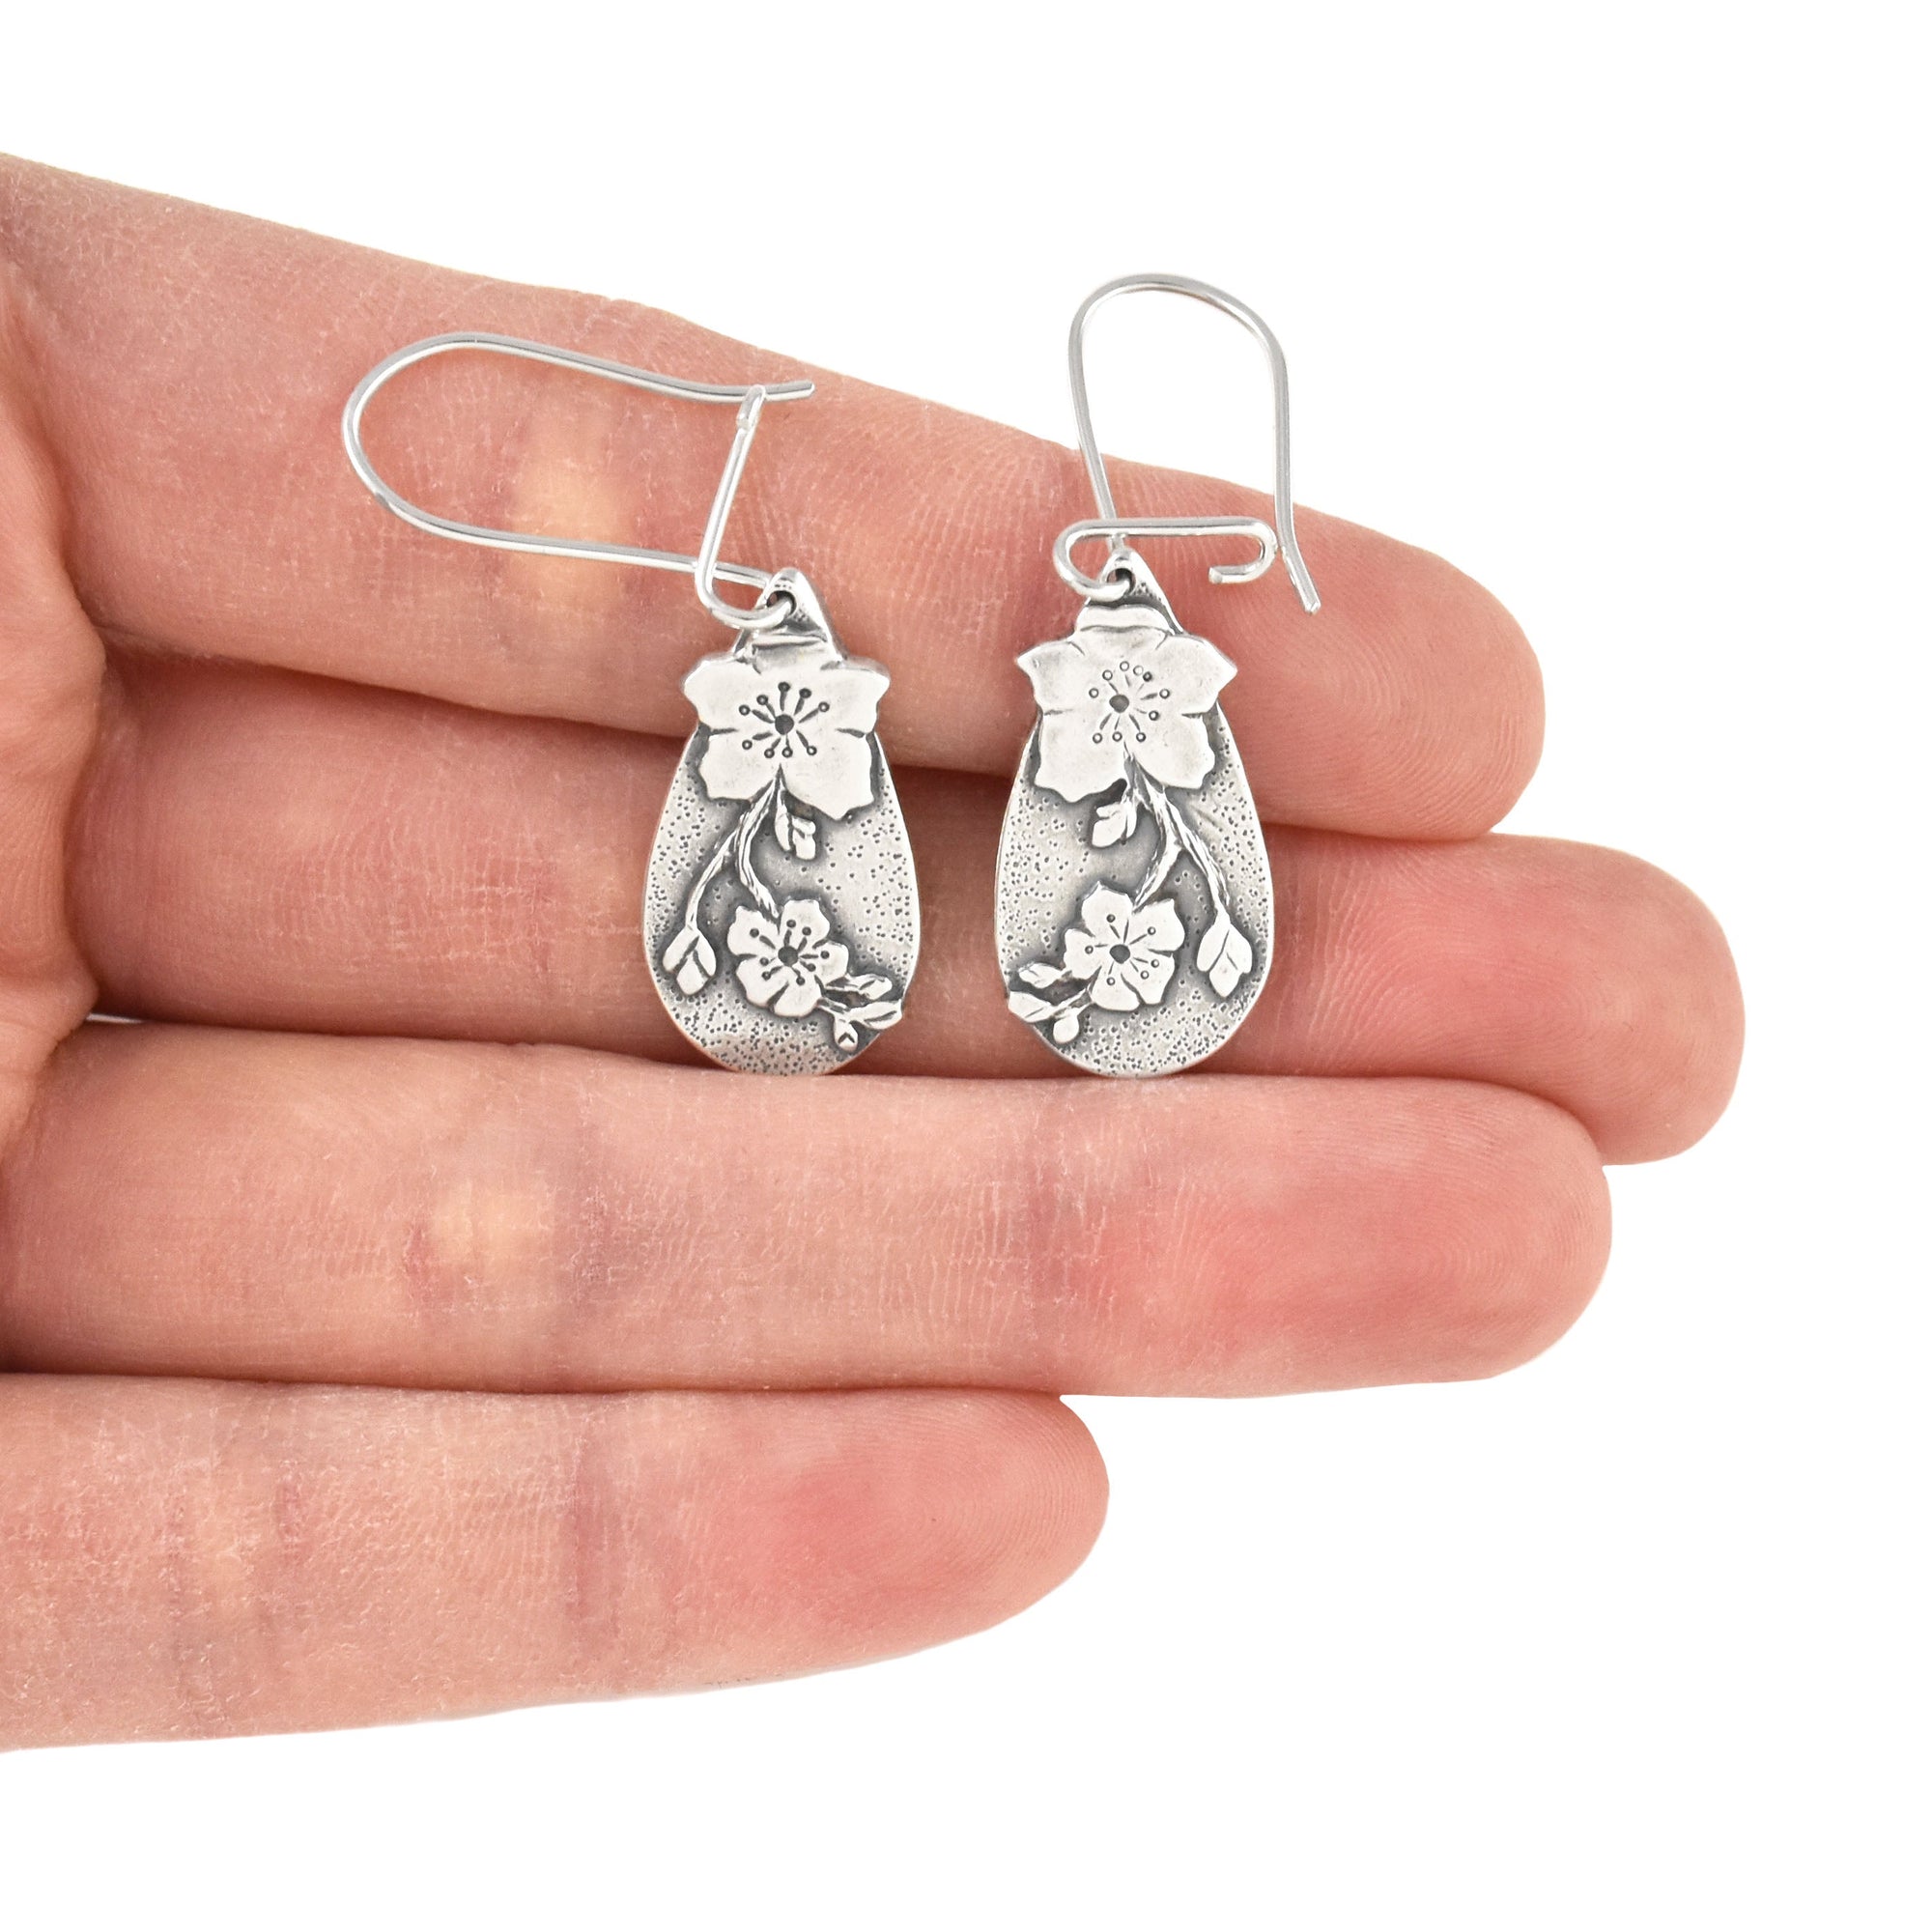 Apple Blossom Earrings - Silver Earrings   5772 - handmade by Beth Millner Jewelry